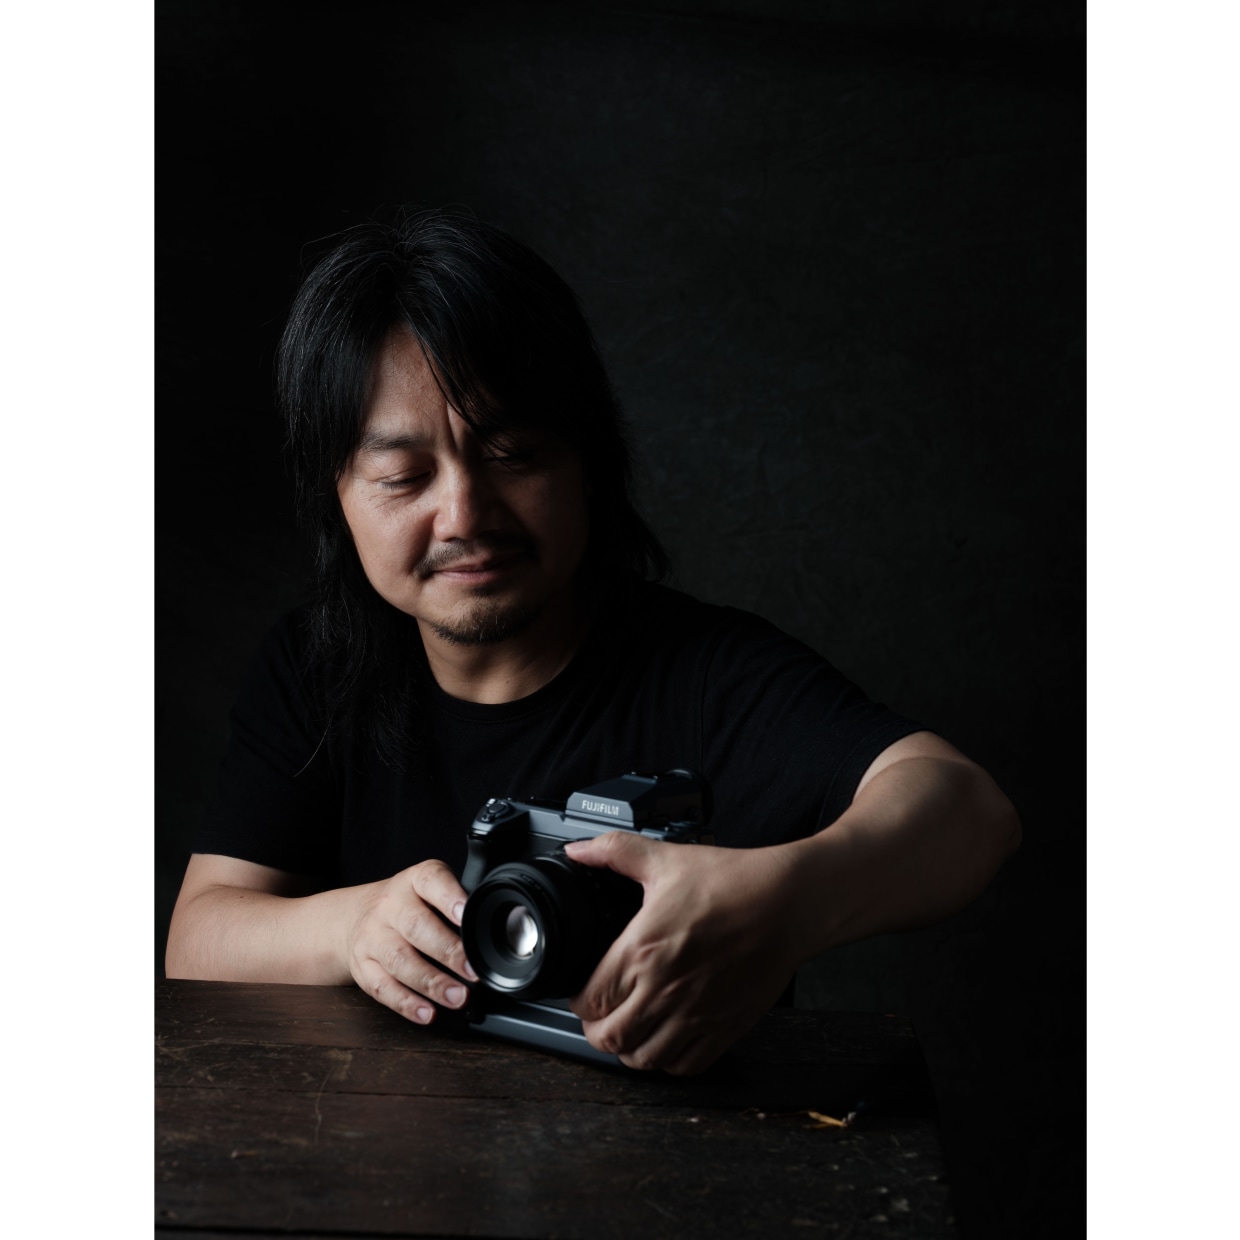 艺术家：唐小平 唐小平，摄影师，工作生活于广州。曾从事的工作包括电影美术、平面设计、创意总监、画廊主理人等等，目前以摄影为媒介游走于商业和艺术之间。他的作品曾被各类创意年鉴收录，包括全球顶尖广告杂志《广告档案》，也广泛参与各类展览。作为一个创作者，他最重要的奖项有：第12届中国摄影金像奖、第26届“国展”评委会推荐佳作奖、“奥地利超级摄影巡回赛”四枚金牌、广州4A年轻人创意大赛全场大奖和最佳美术指导。目前，他在好几所大学教摄影课程，包括广州美术学院、长沙理工大学、广东财经大学、广东轻工职业技术学院等。作为艺术家，他积极参与艺术活动，作品被艺术机构或个人收藏。